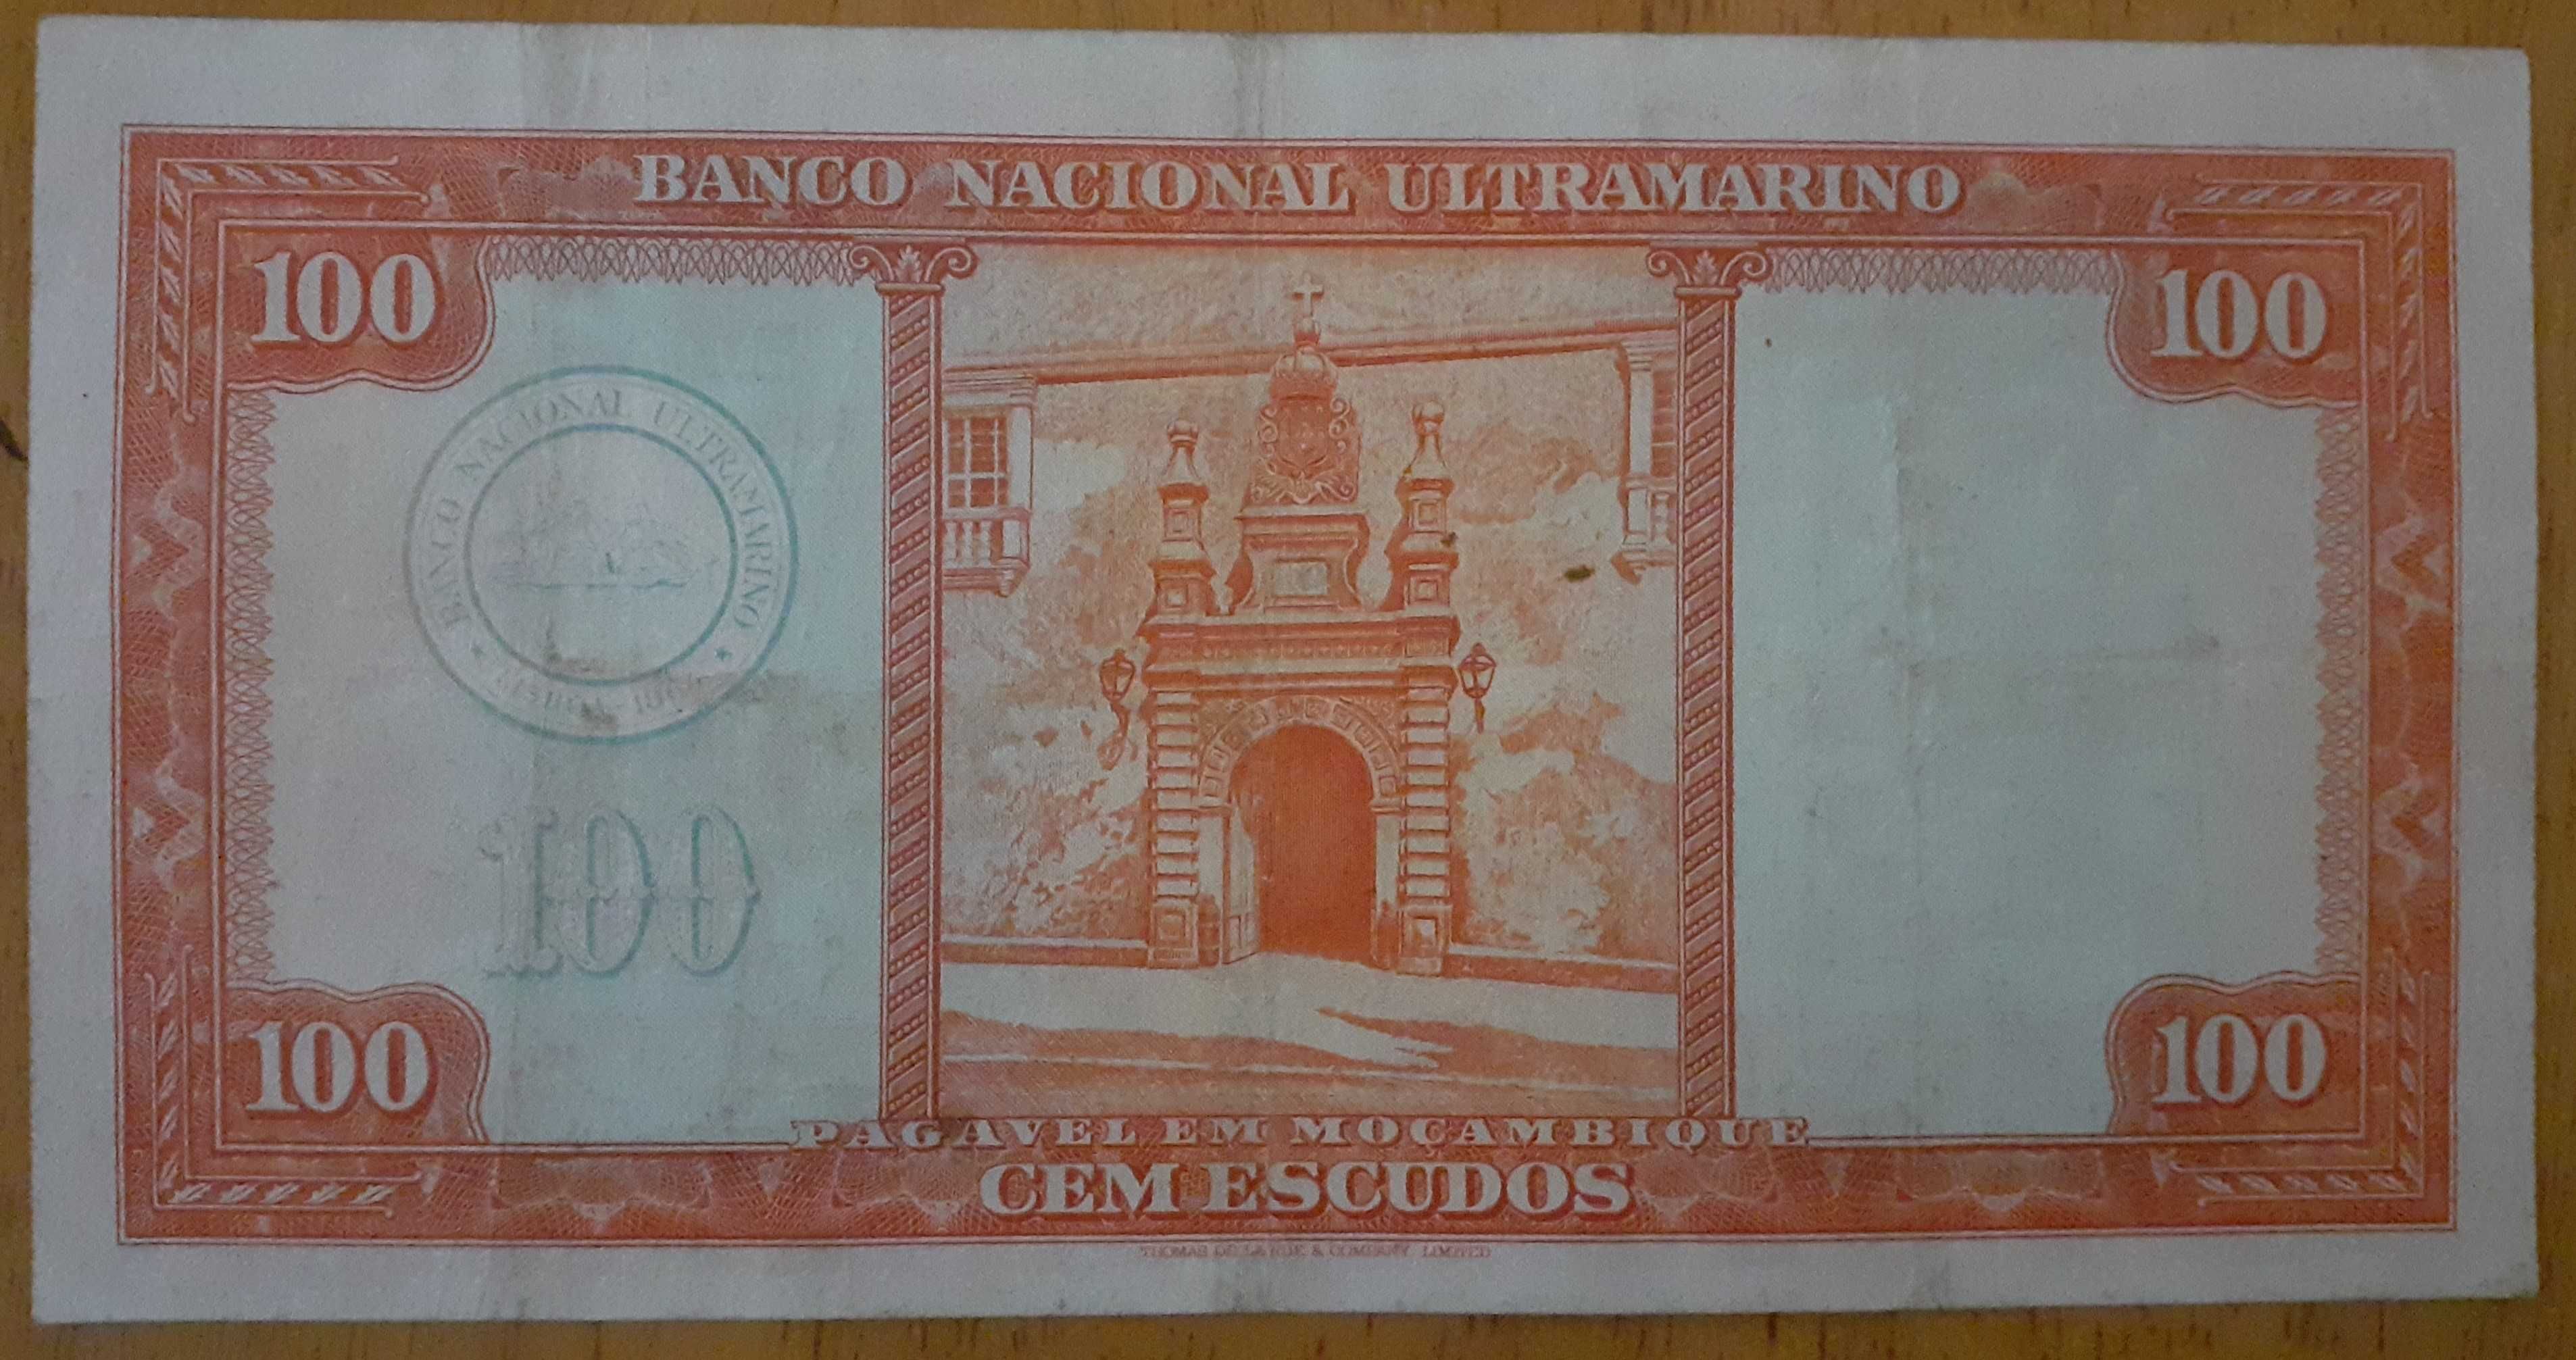 nota de 100 escudos moçambique de 1958 ornelas